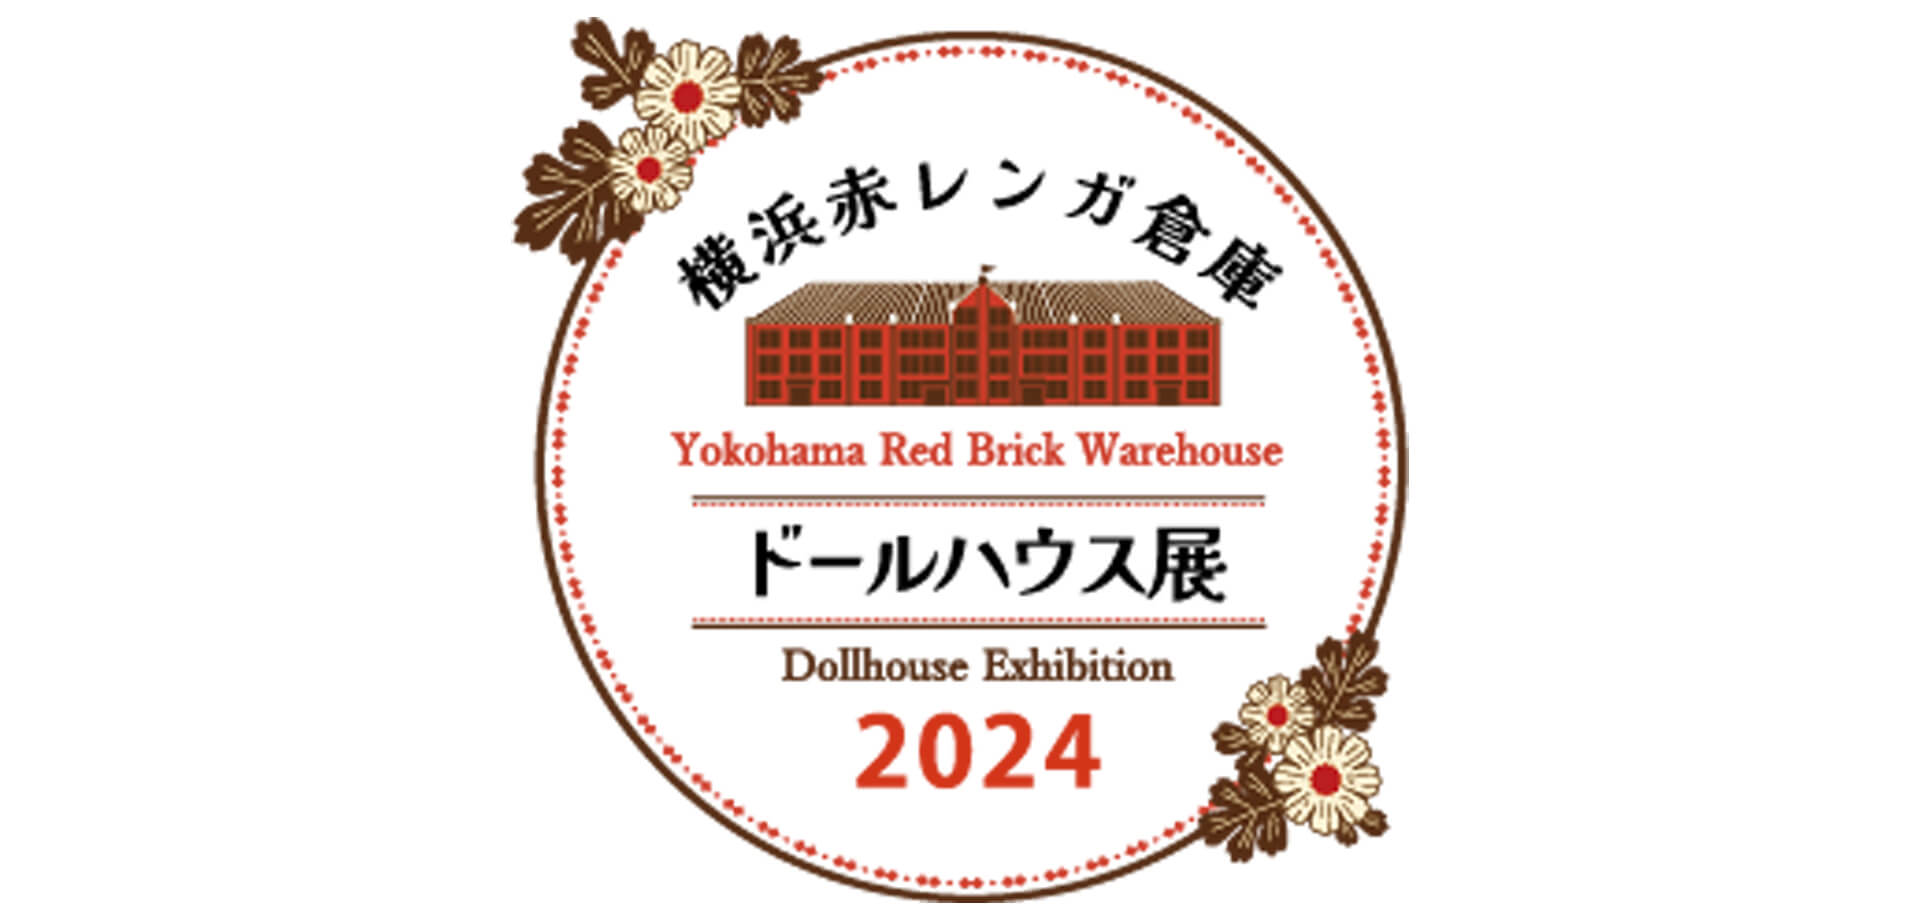 ドールハウス展 横浜赤レンガ倉庫 ロゴ